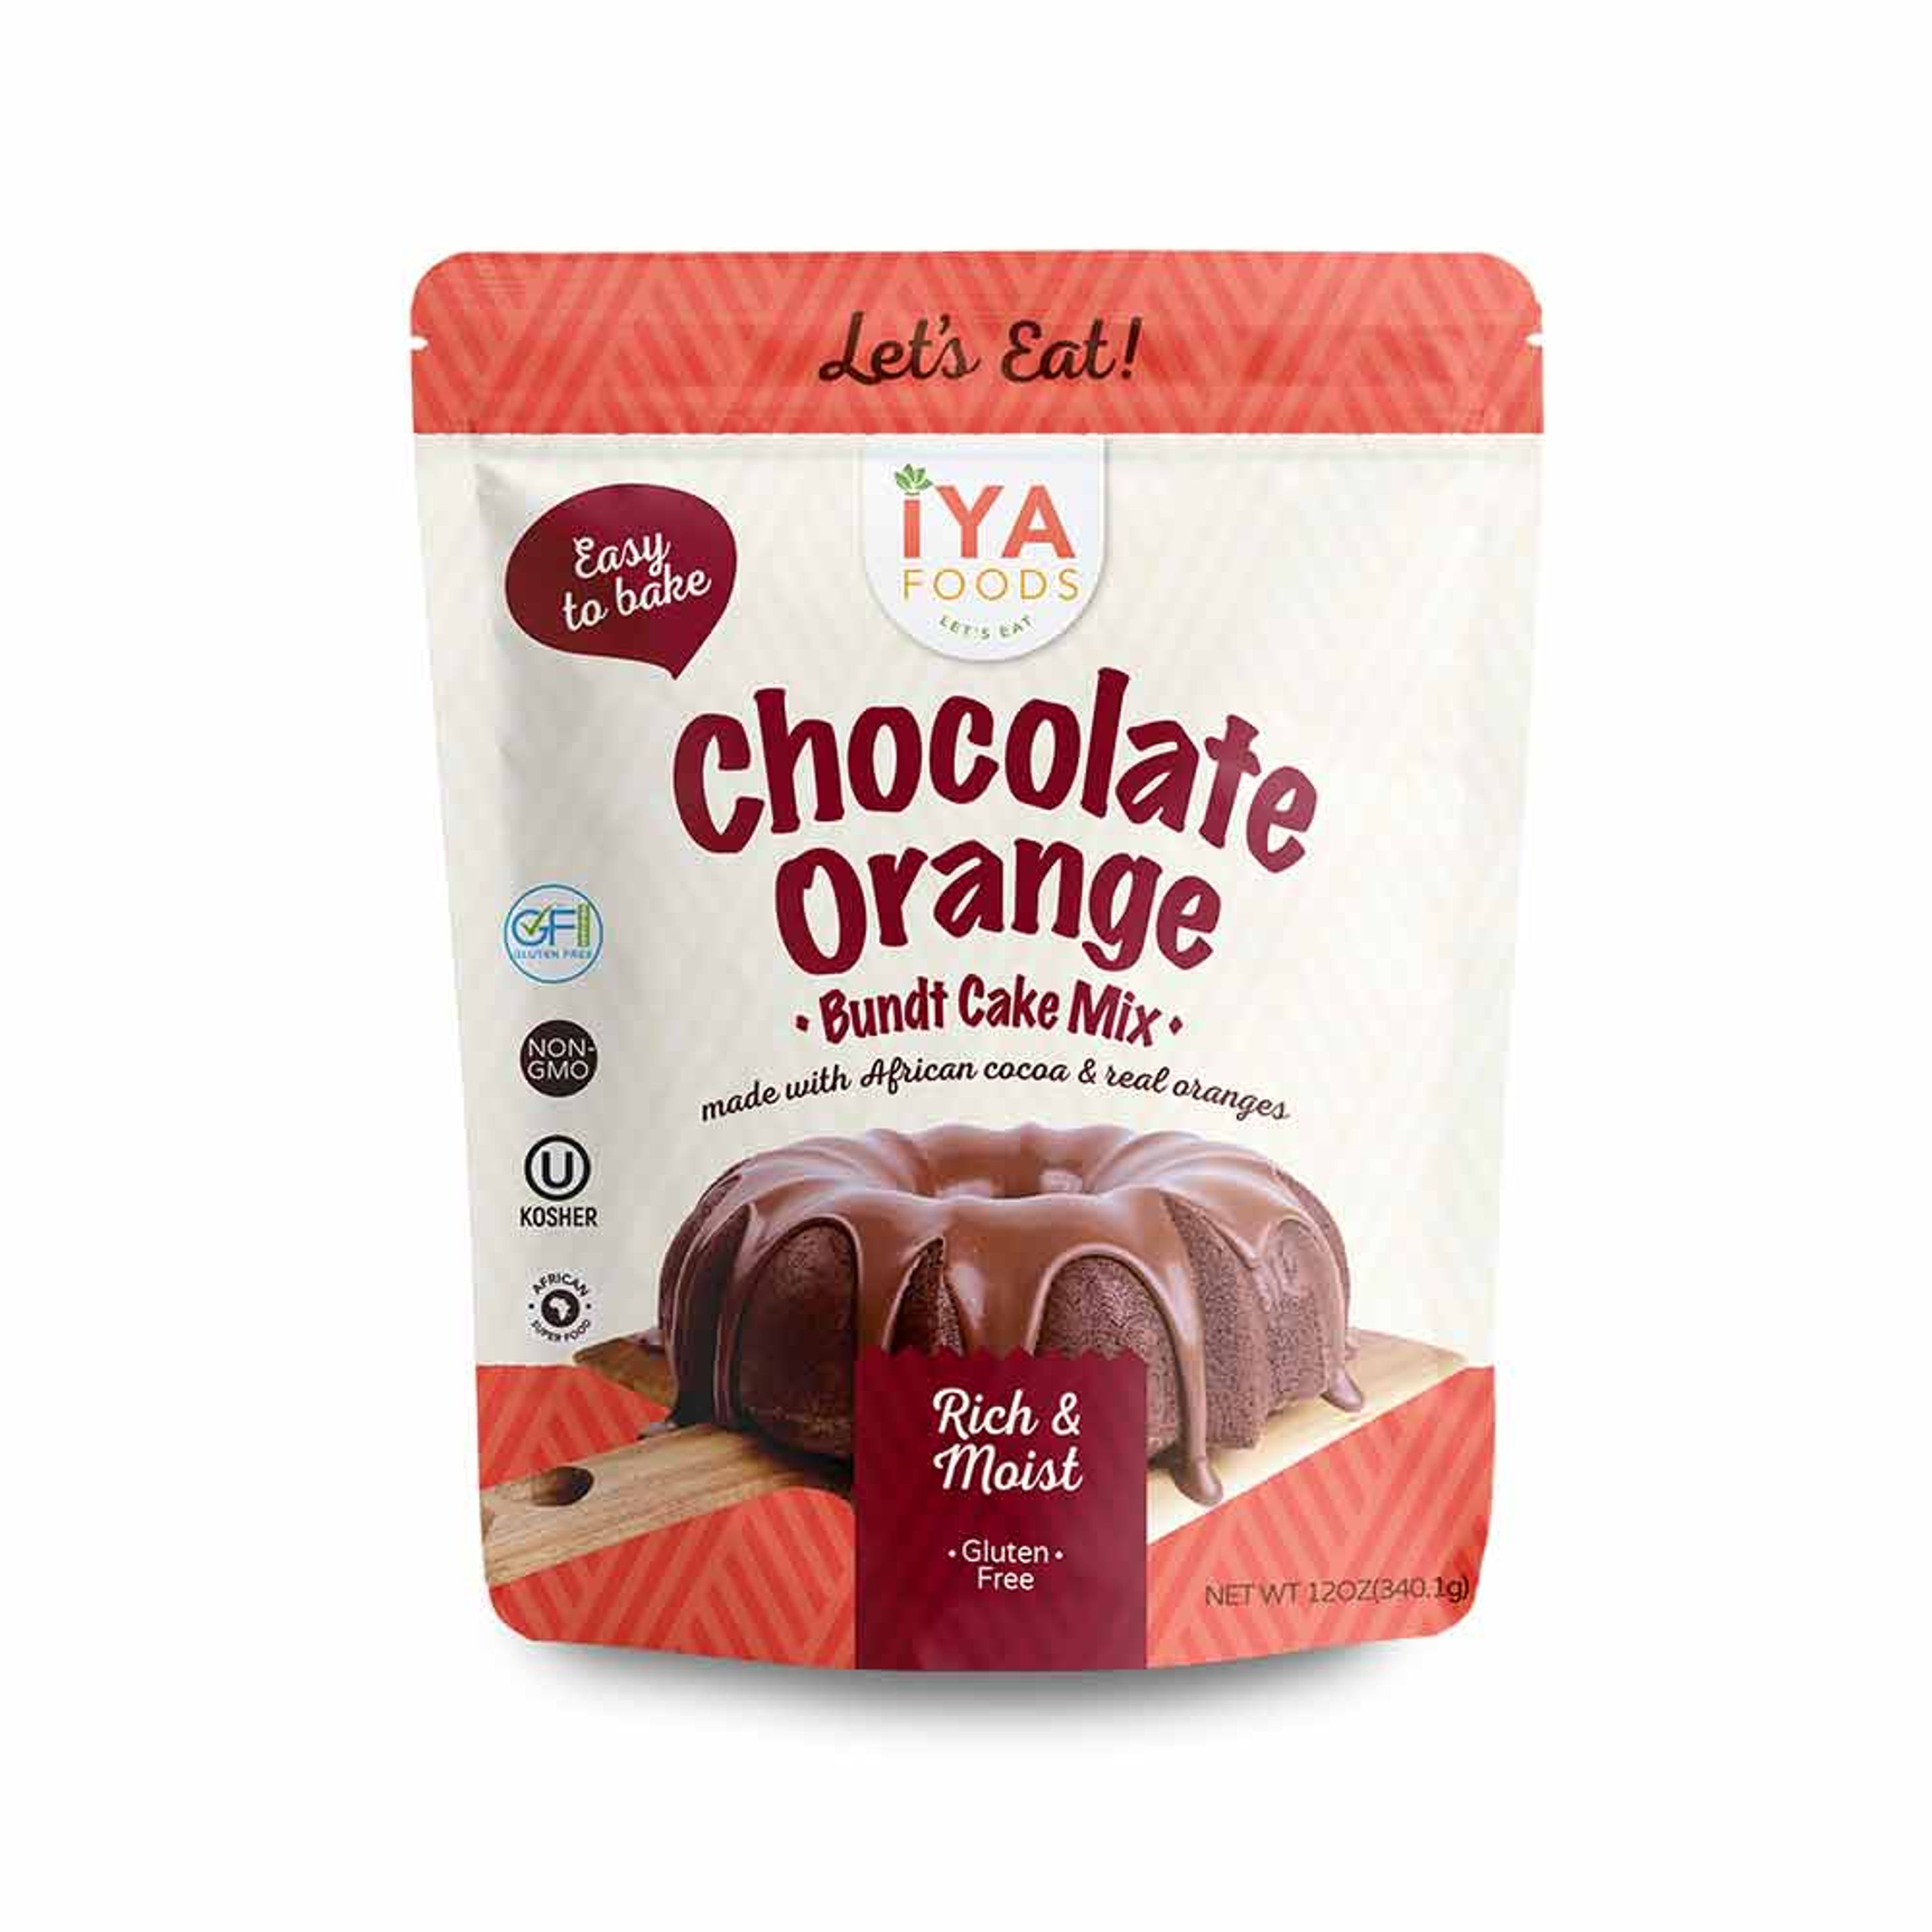 Chocolate Orange Bundt Cake Baking Mix